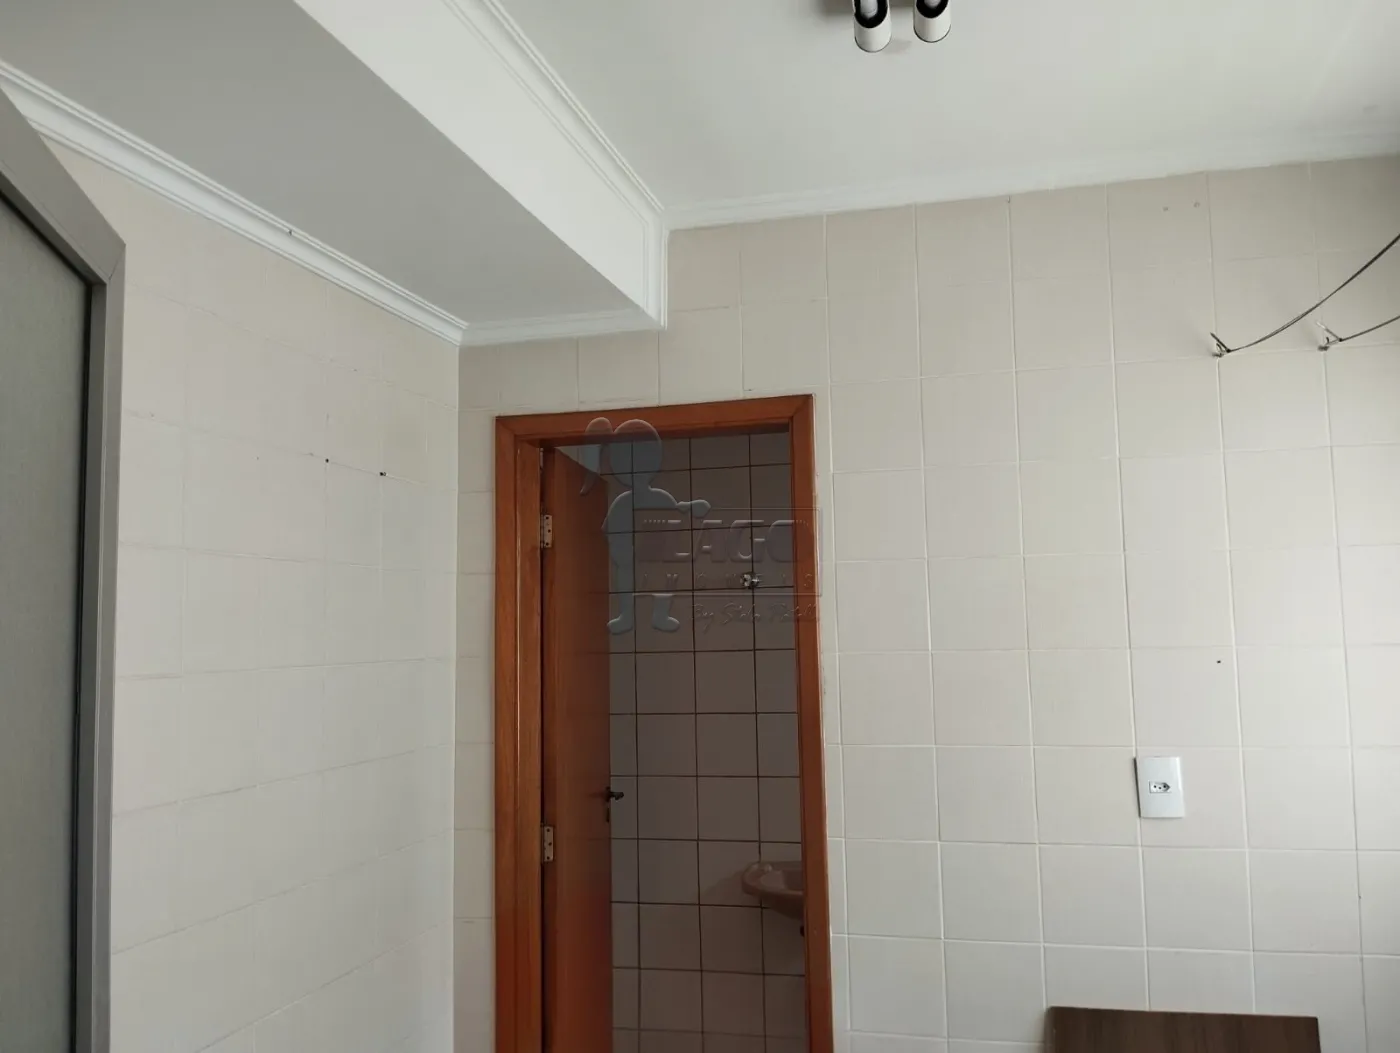 Comprar Apartamento / Padrão em Ribeirão Preto R$ 350.000,00 - Foto 7